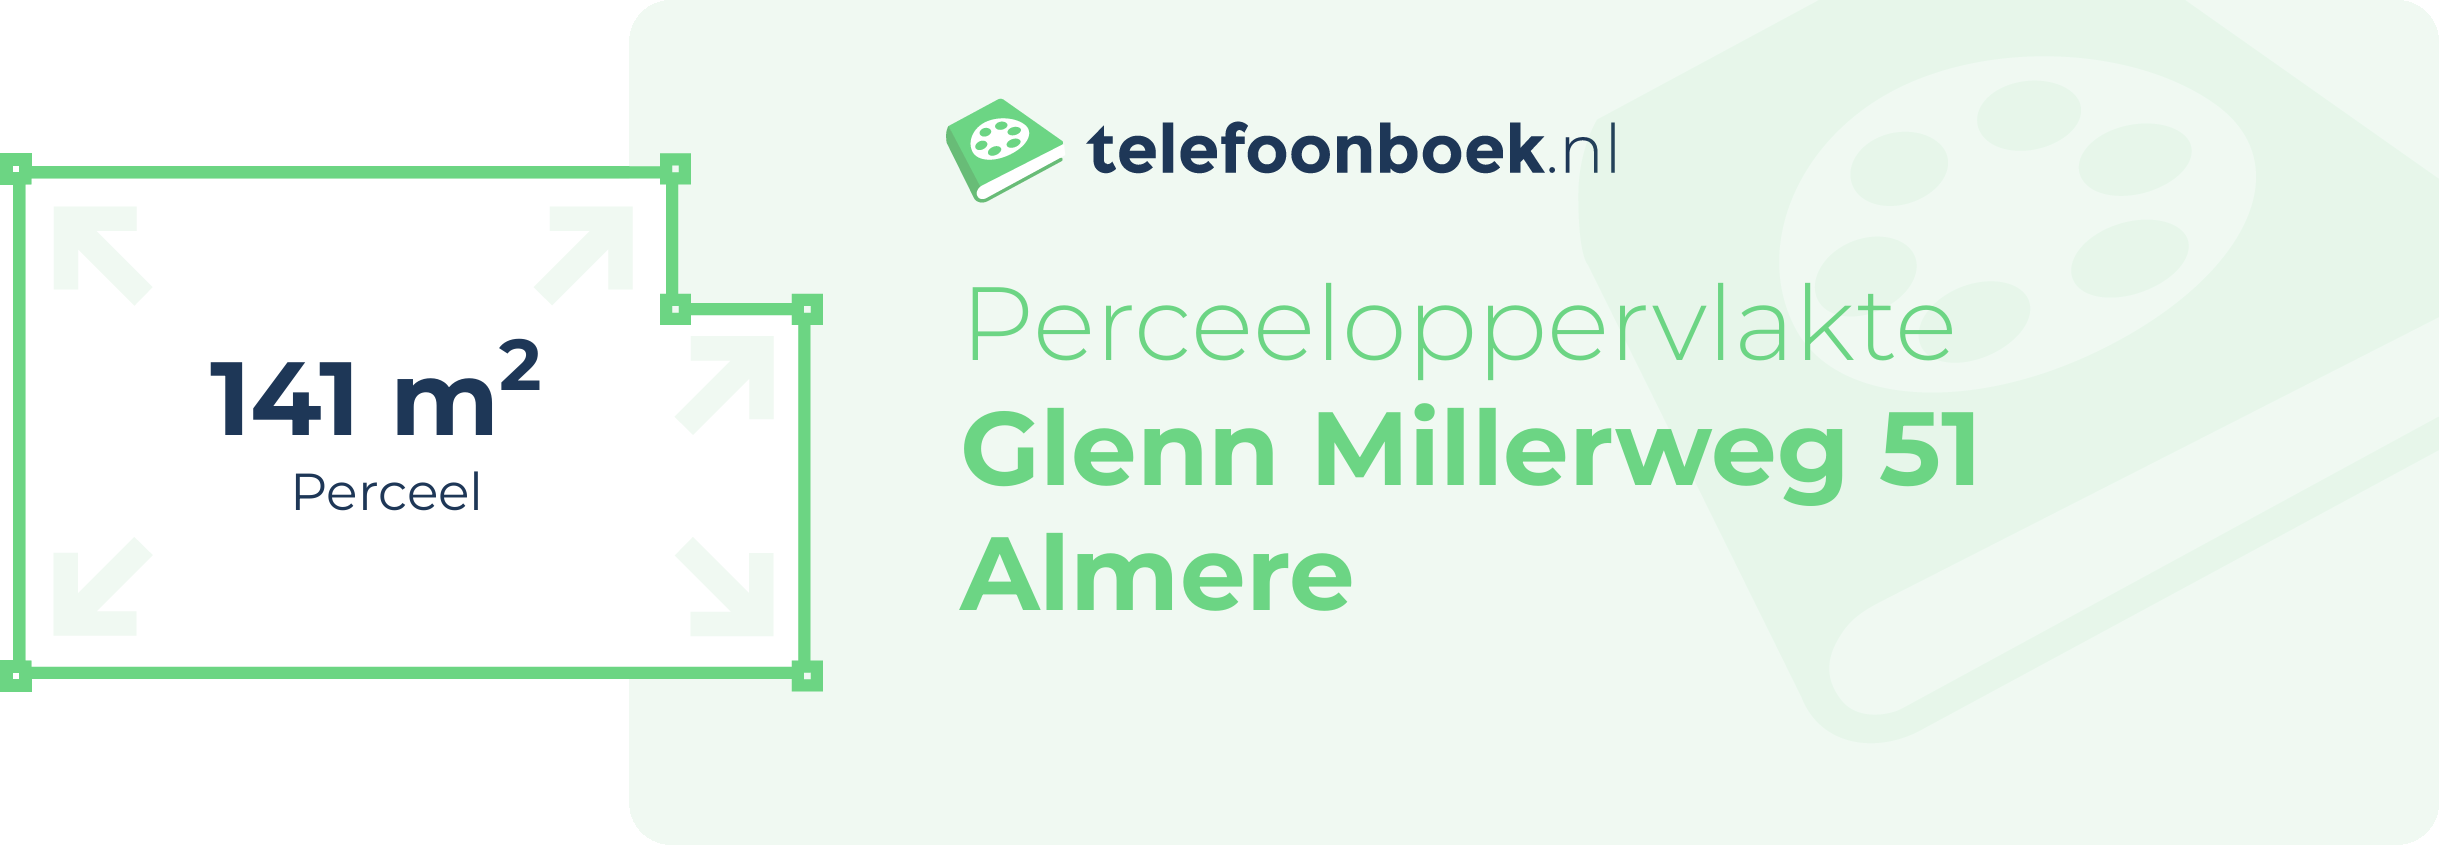 Perceeloppervlakte Glenn Millerweg 51 Almere